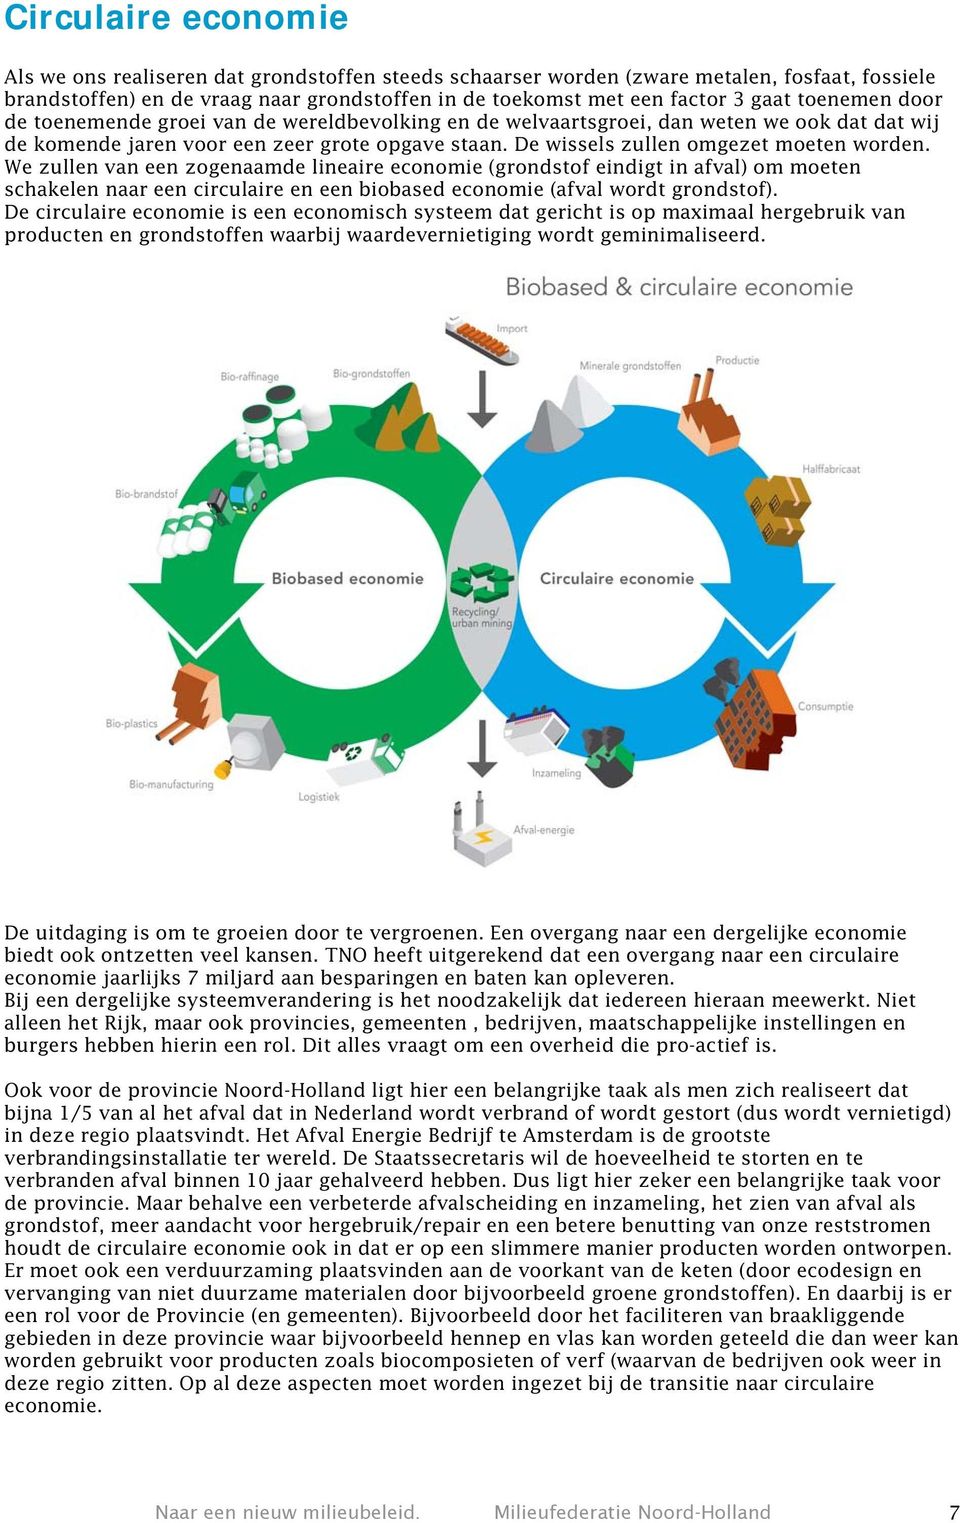 We zullen van een zogenaamde lineaire economie (grondstof eindigt in afval) om moeten schakelen naar een circulaire en een biobased economie (afval wordt grondstof).